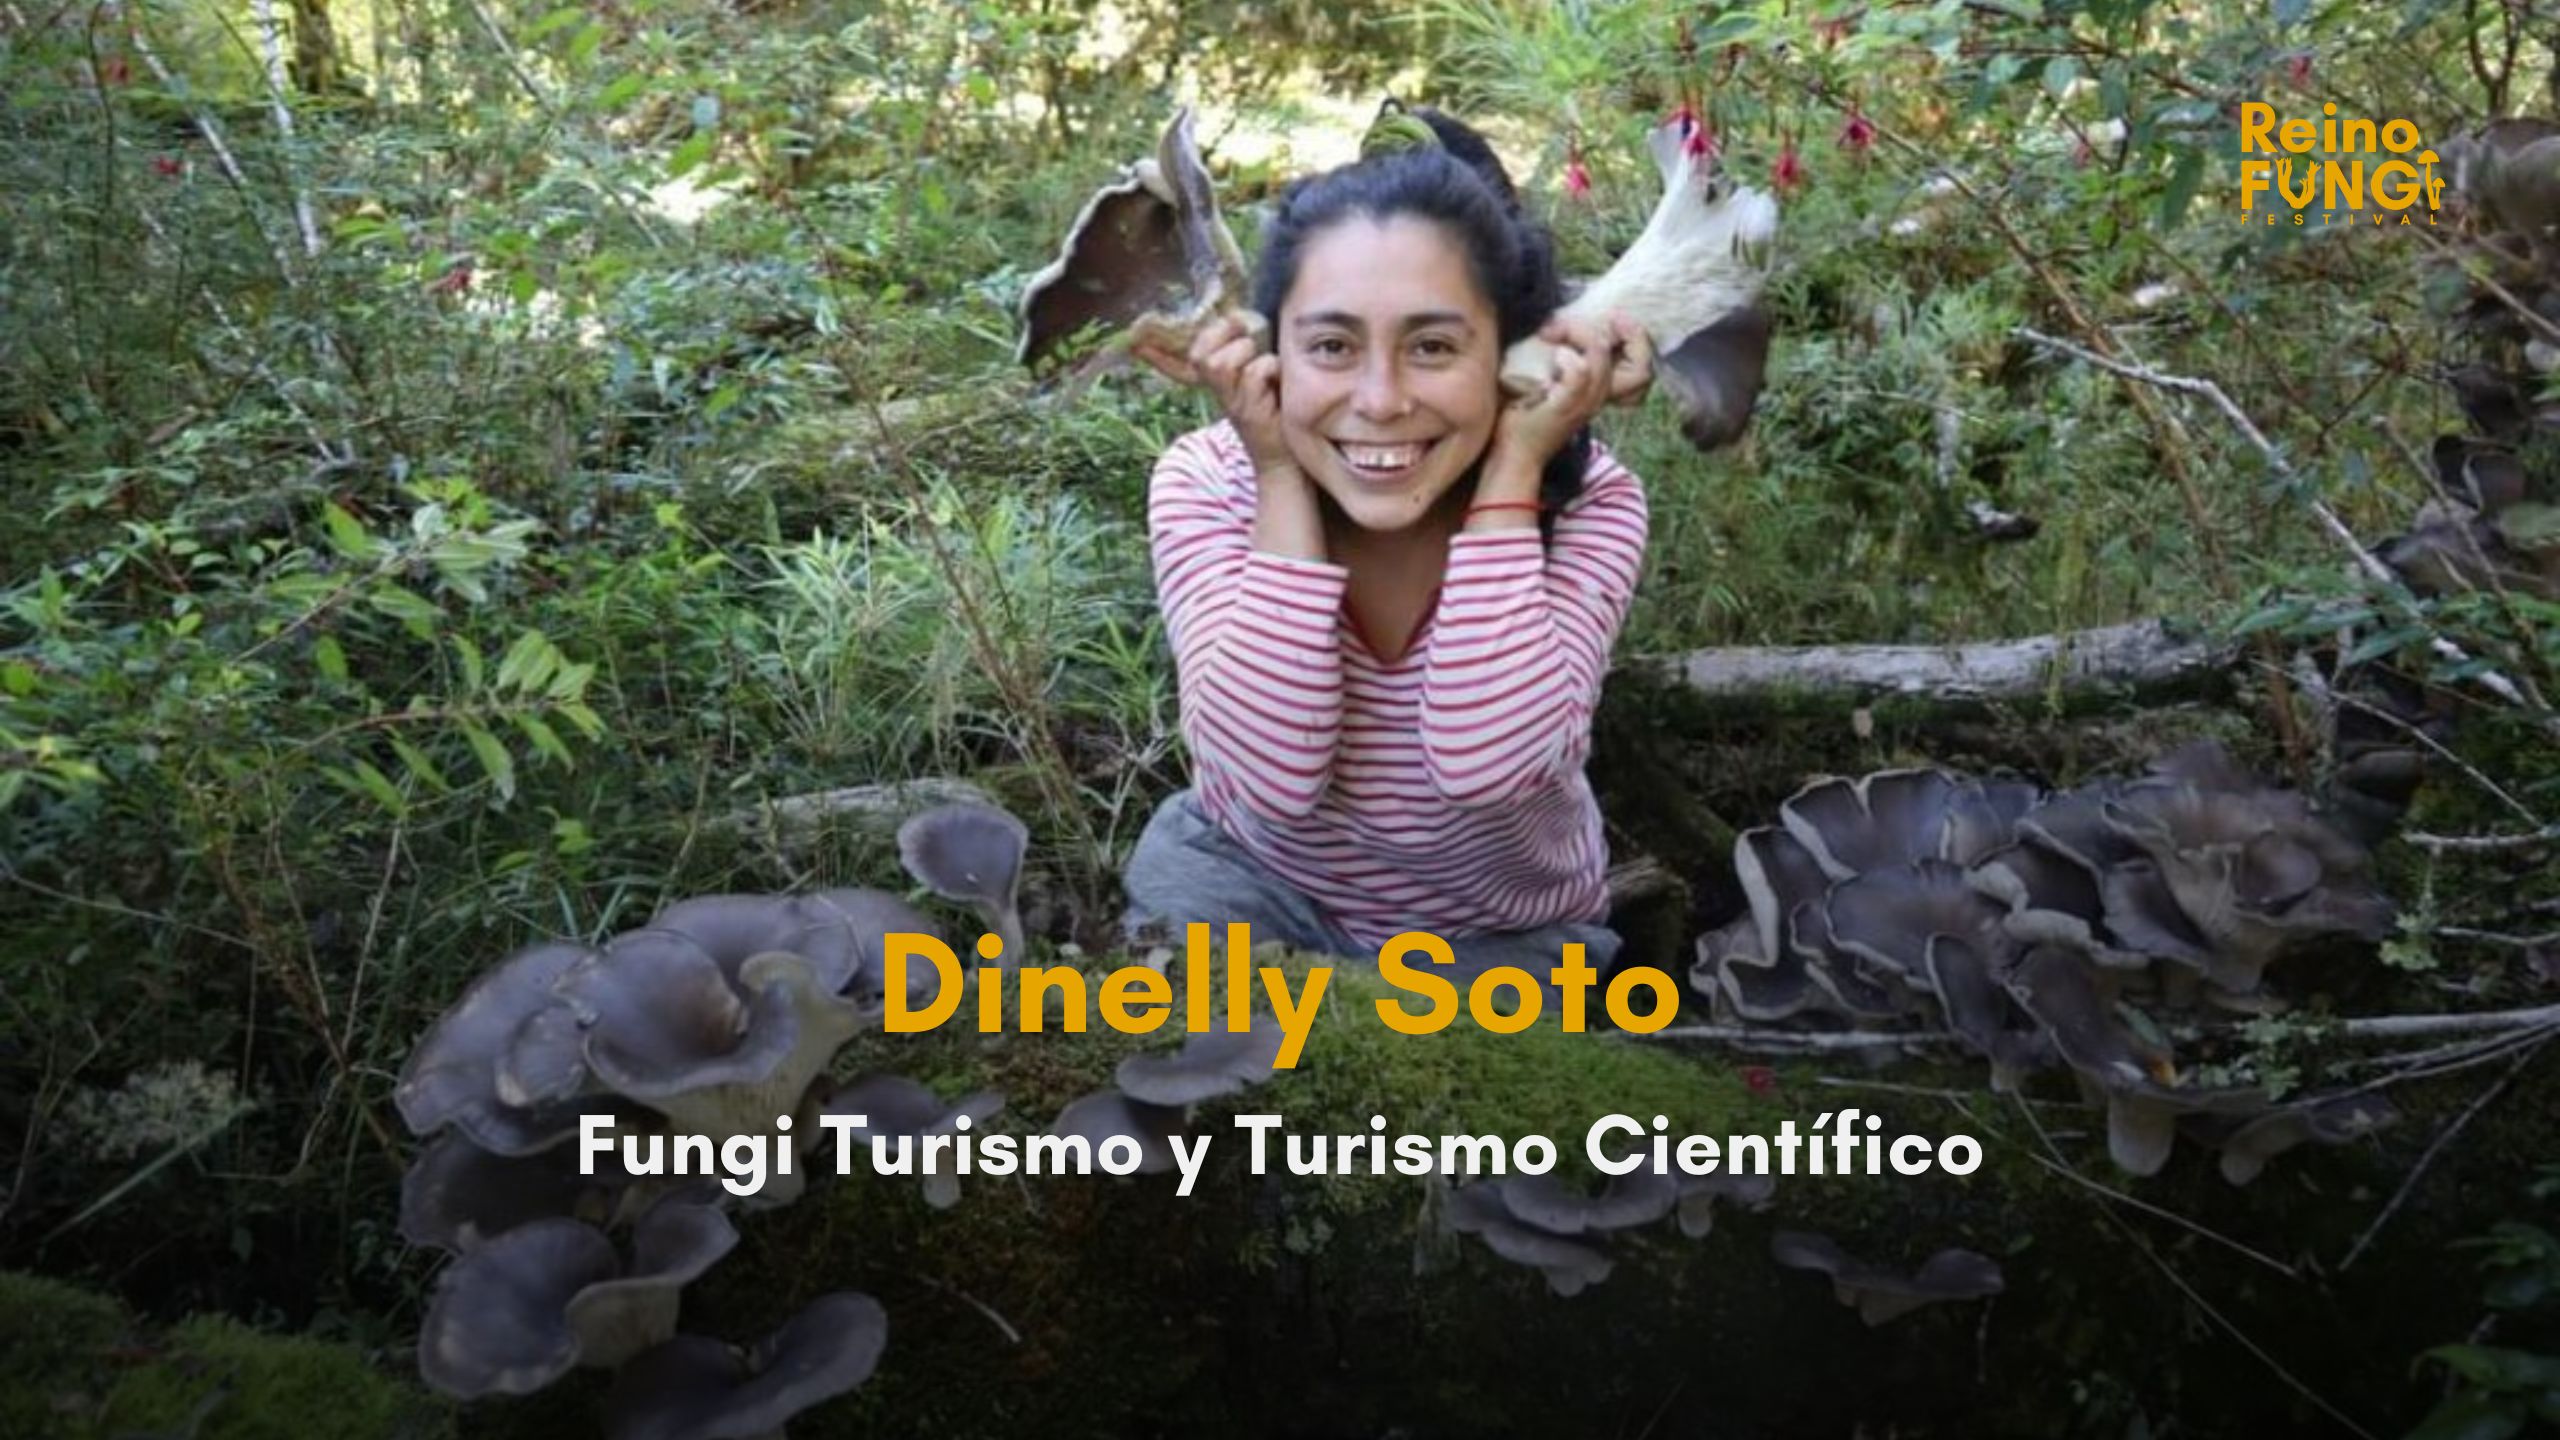 Fungi turismo y turismo científico - Dinelly Soto